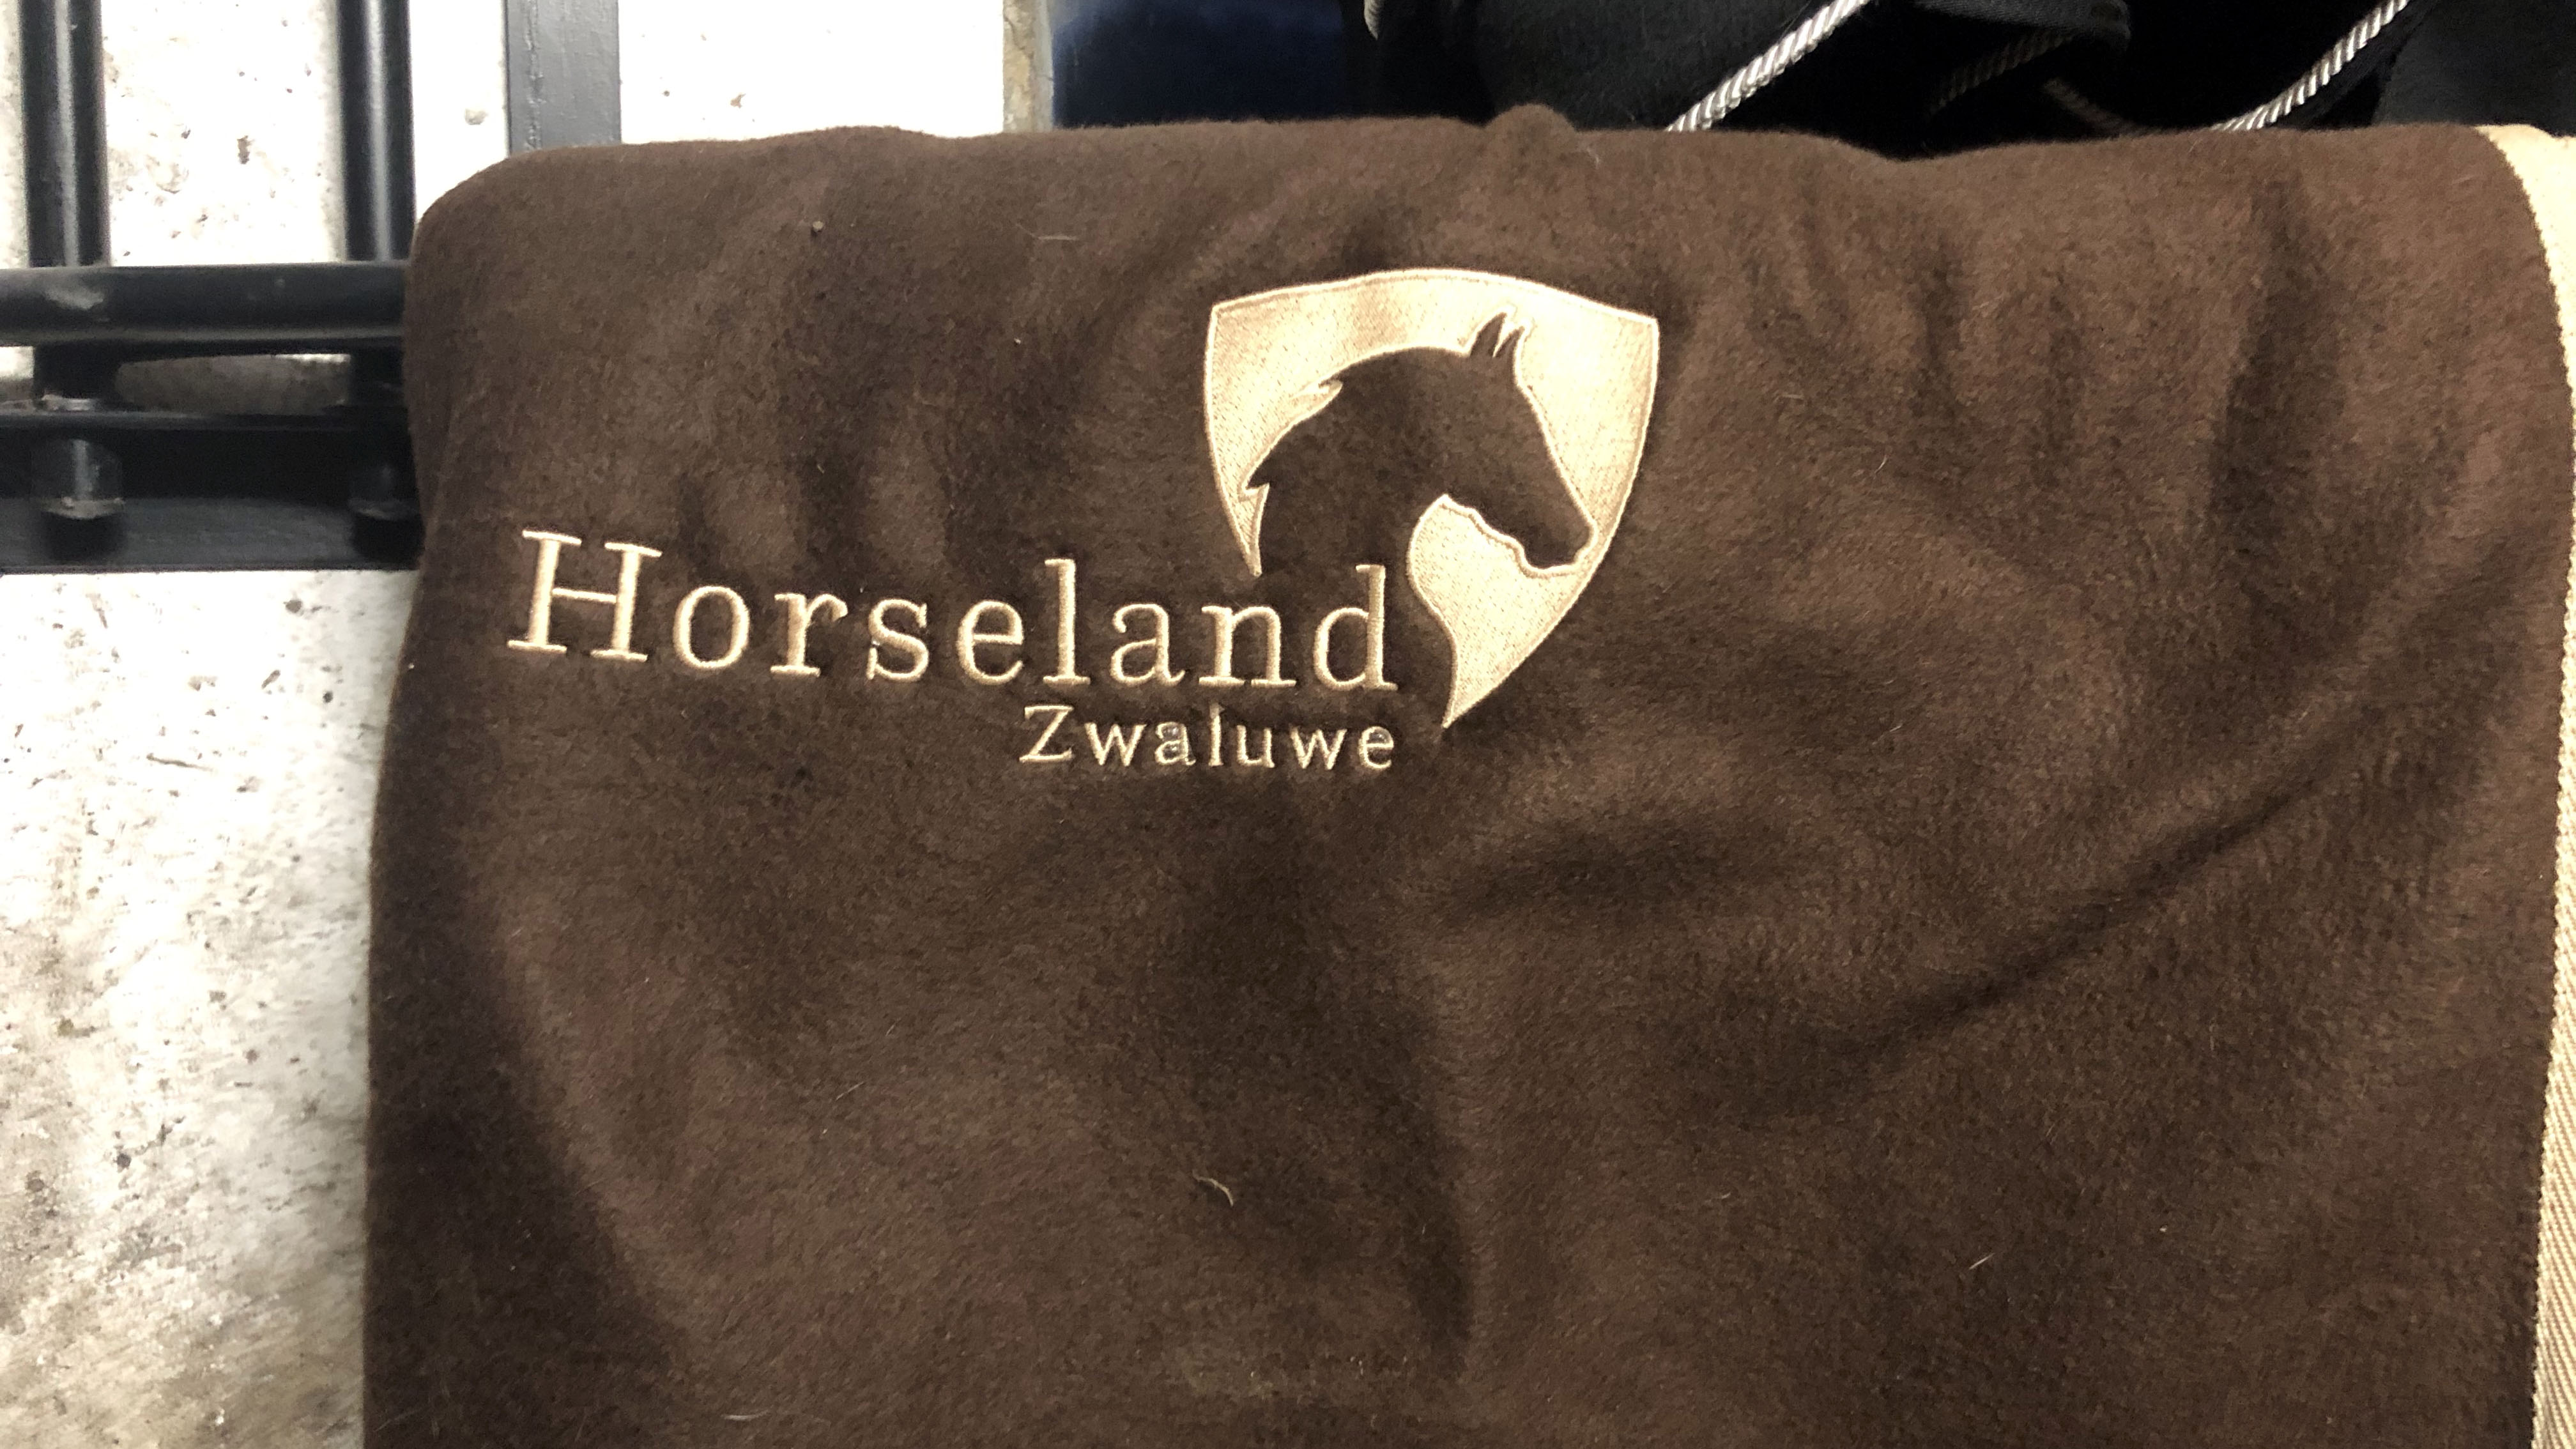 Horseland Zwaluwe